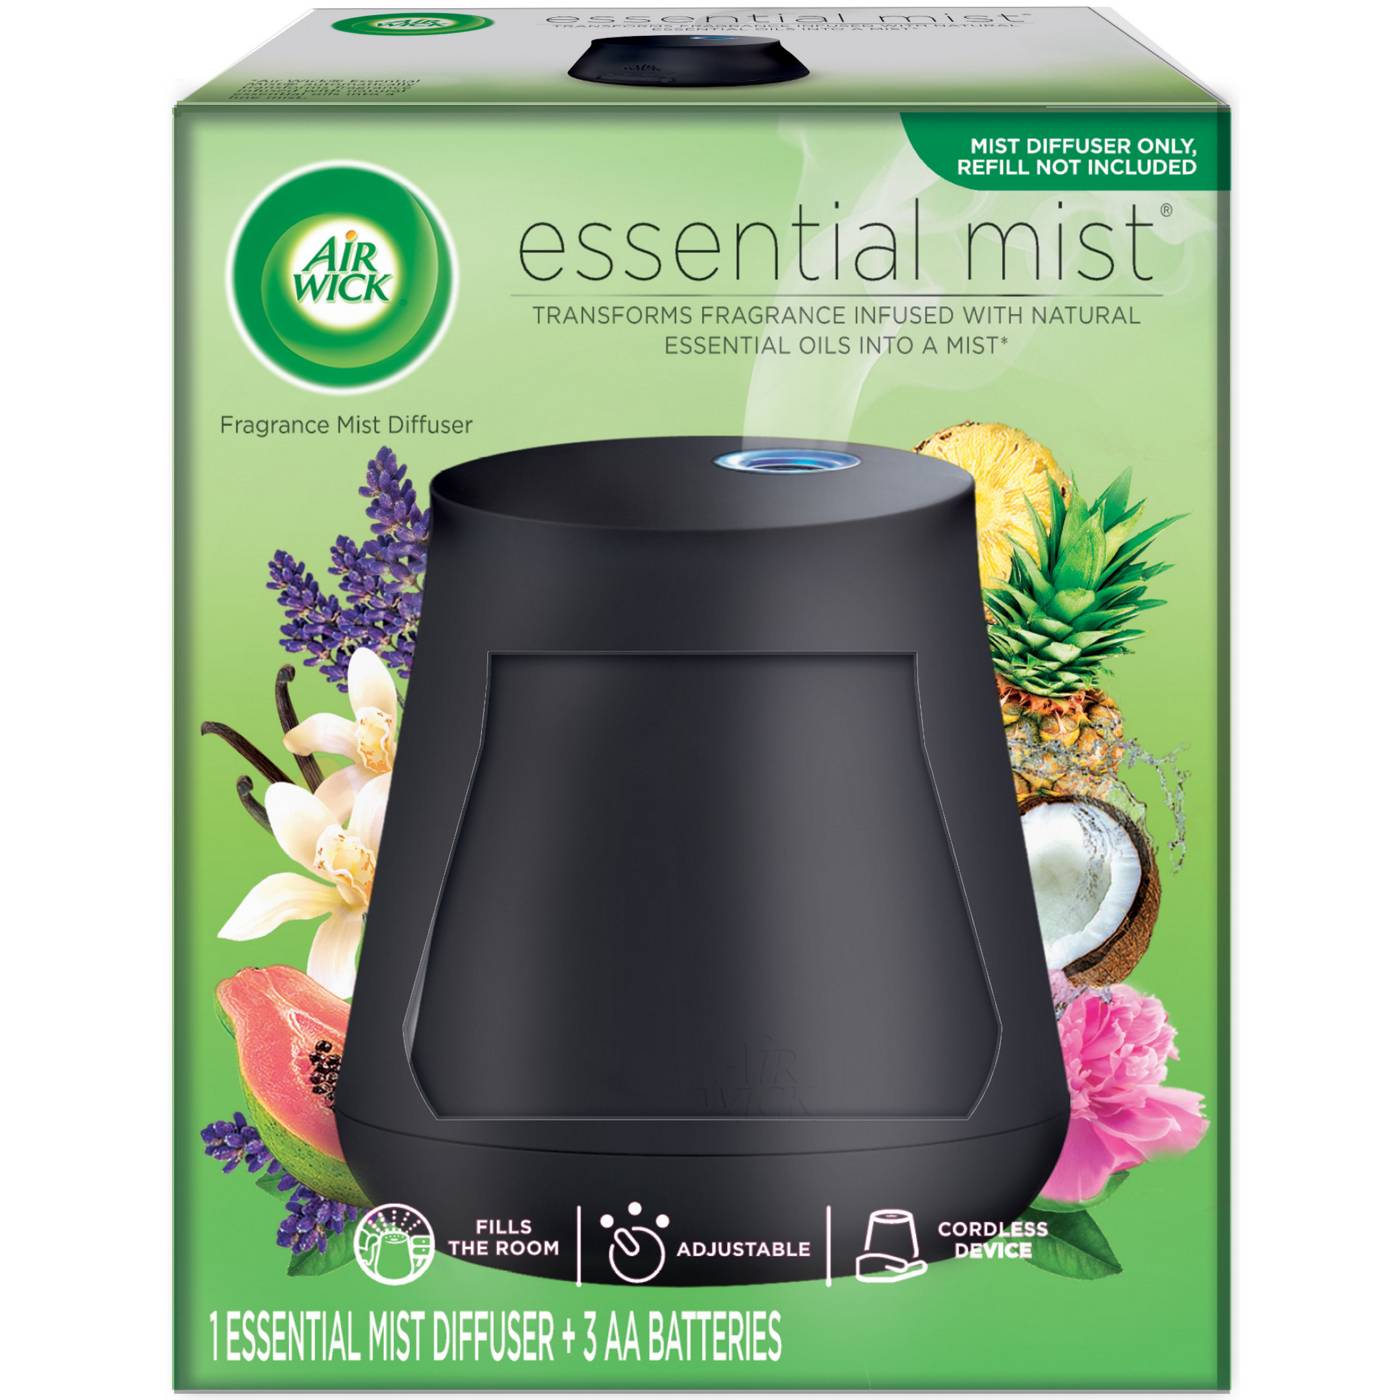 Air Wick Essential Mist Diffuser - Shop Air Fresheners at H-E-B